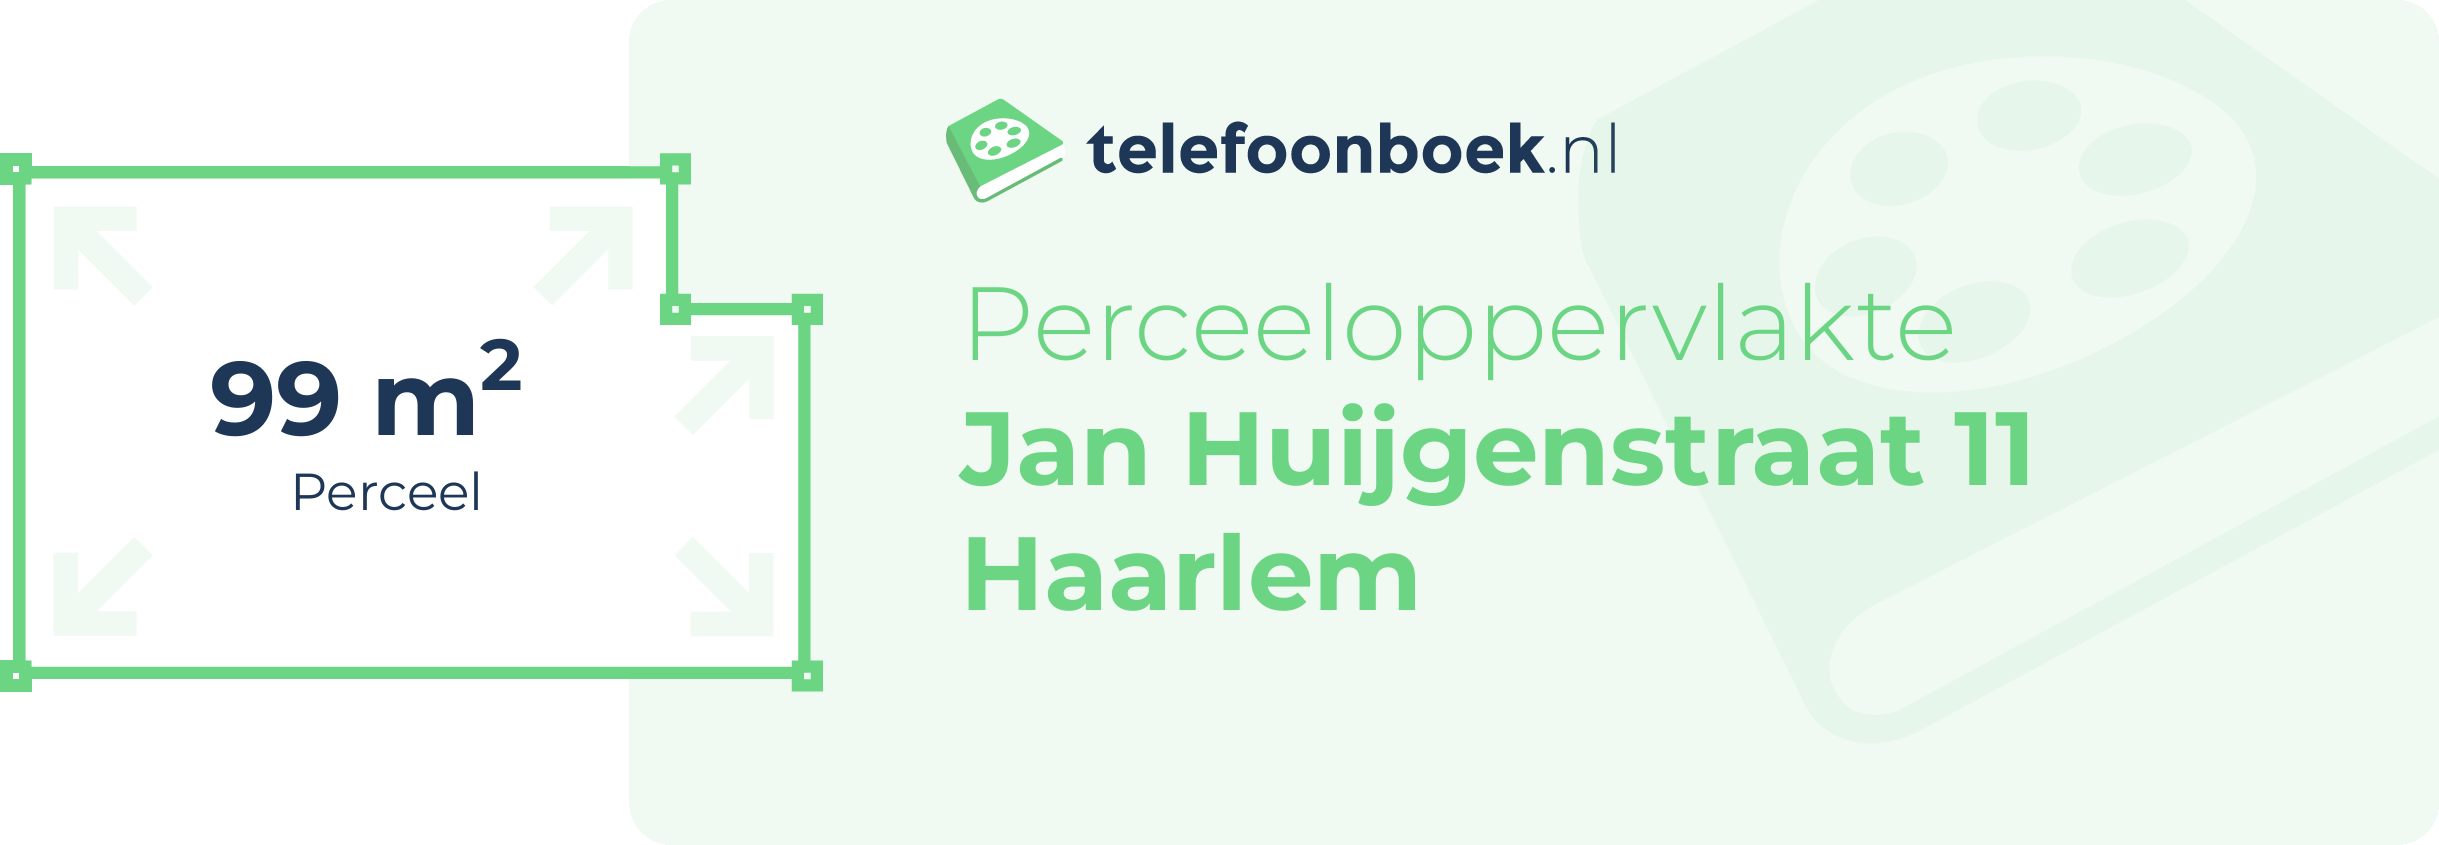 Perceeloppervlakte Jan Huijgenstraat 11 Haarlem